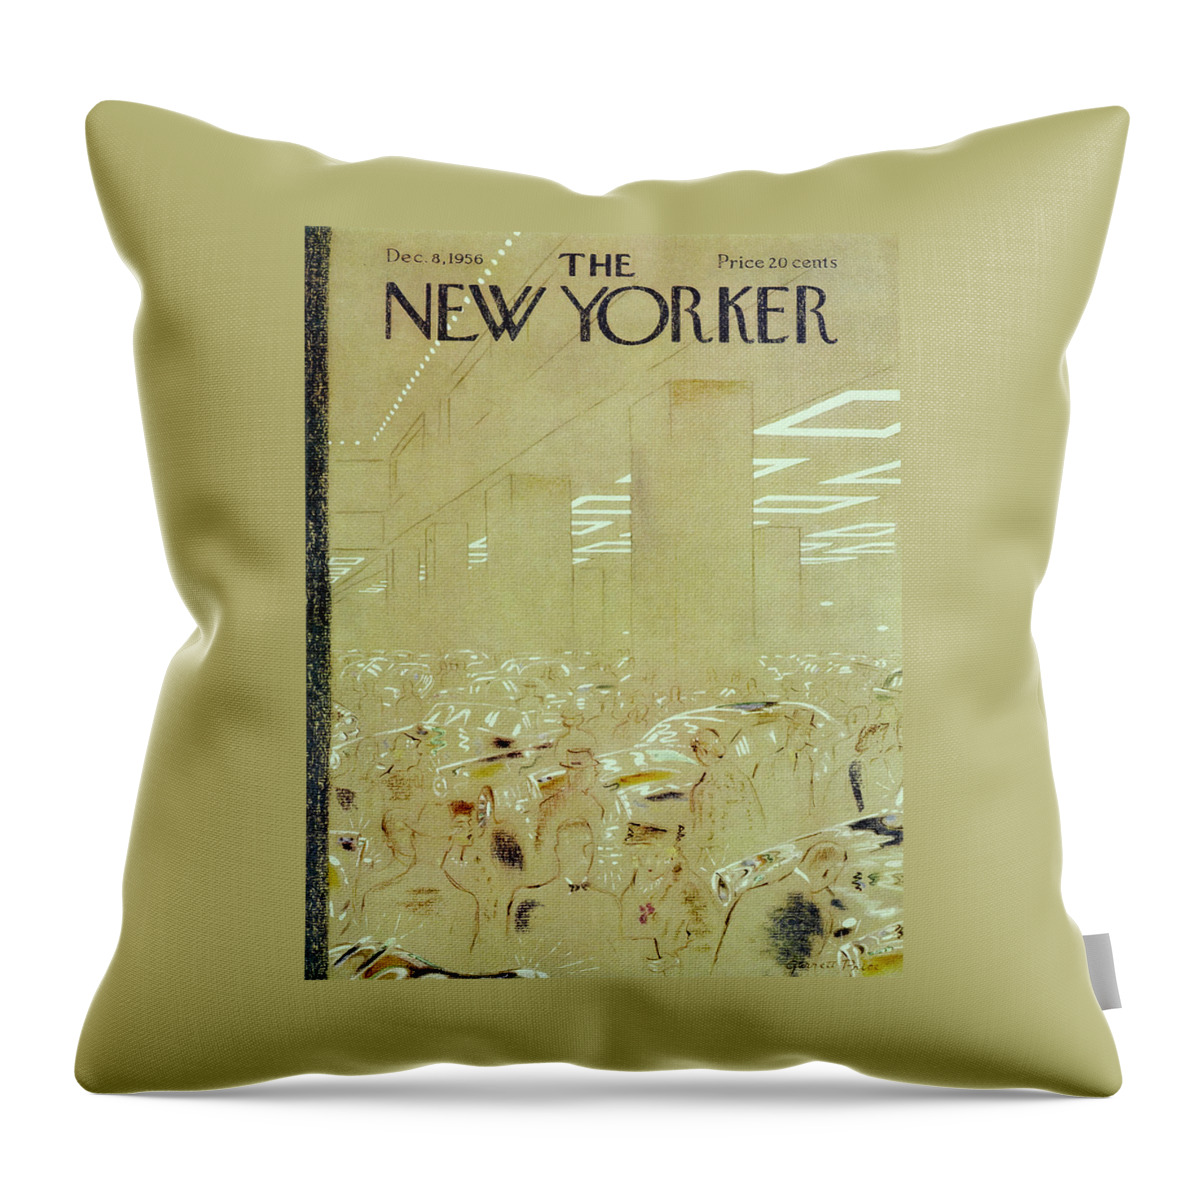 New Yorker December 8 1956 Throw Pillow